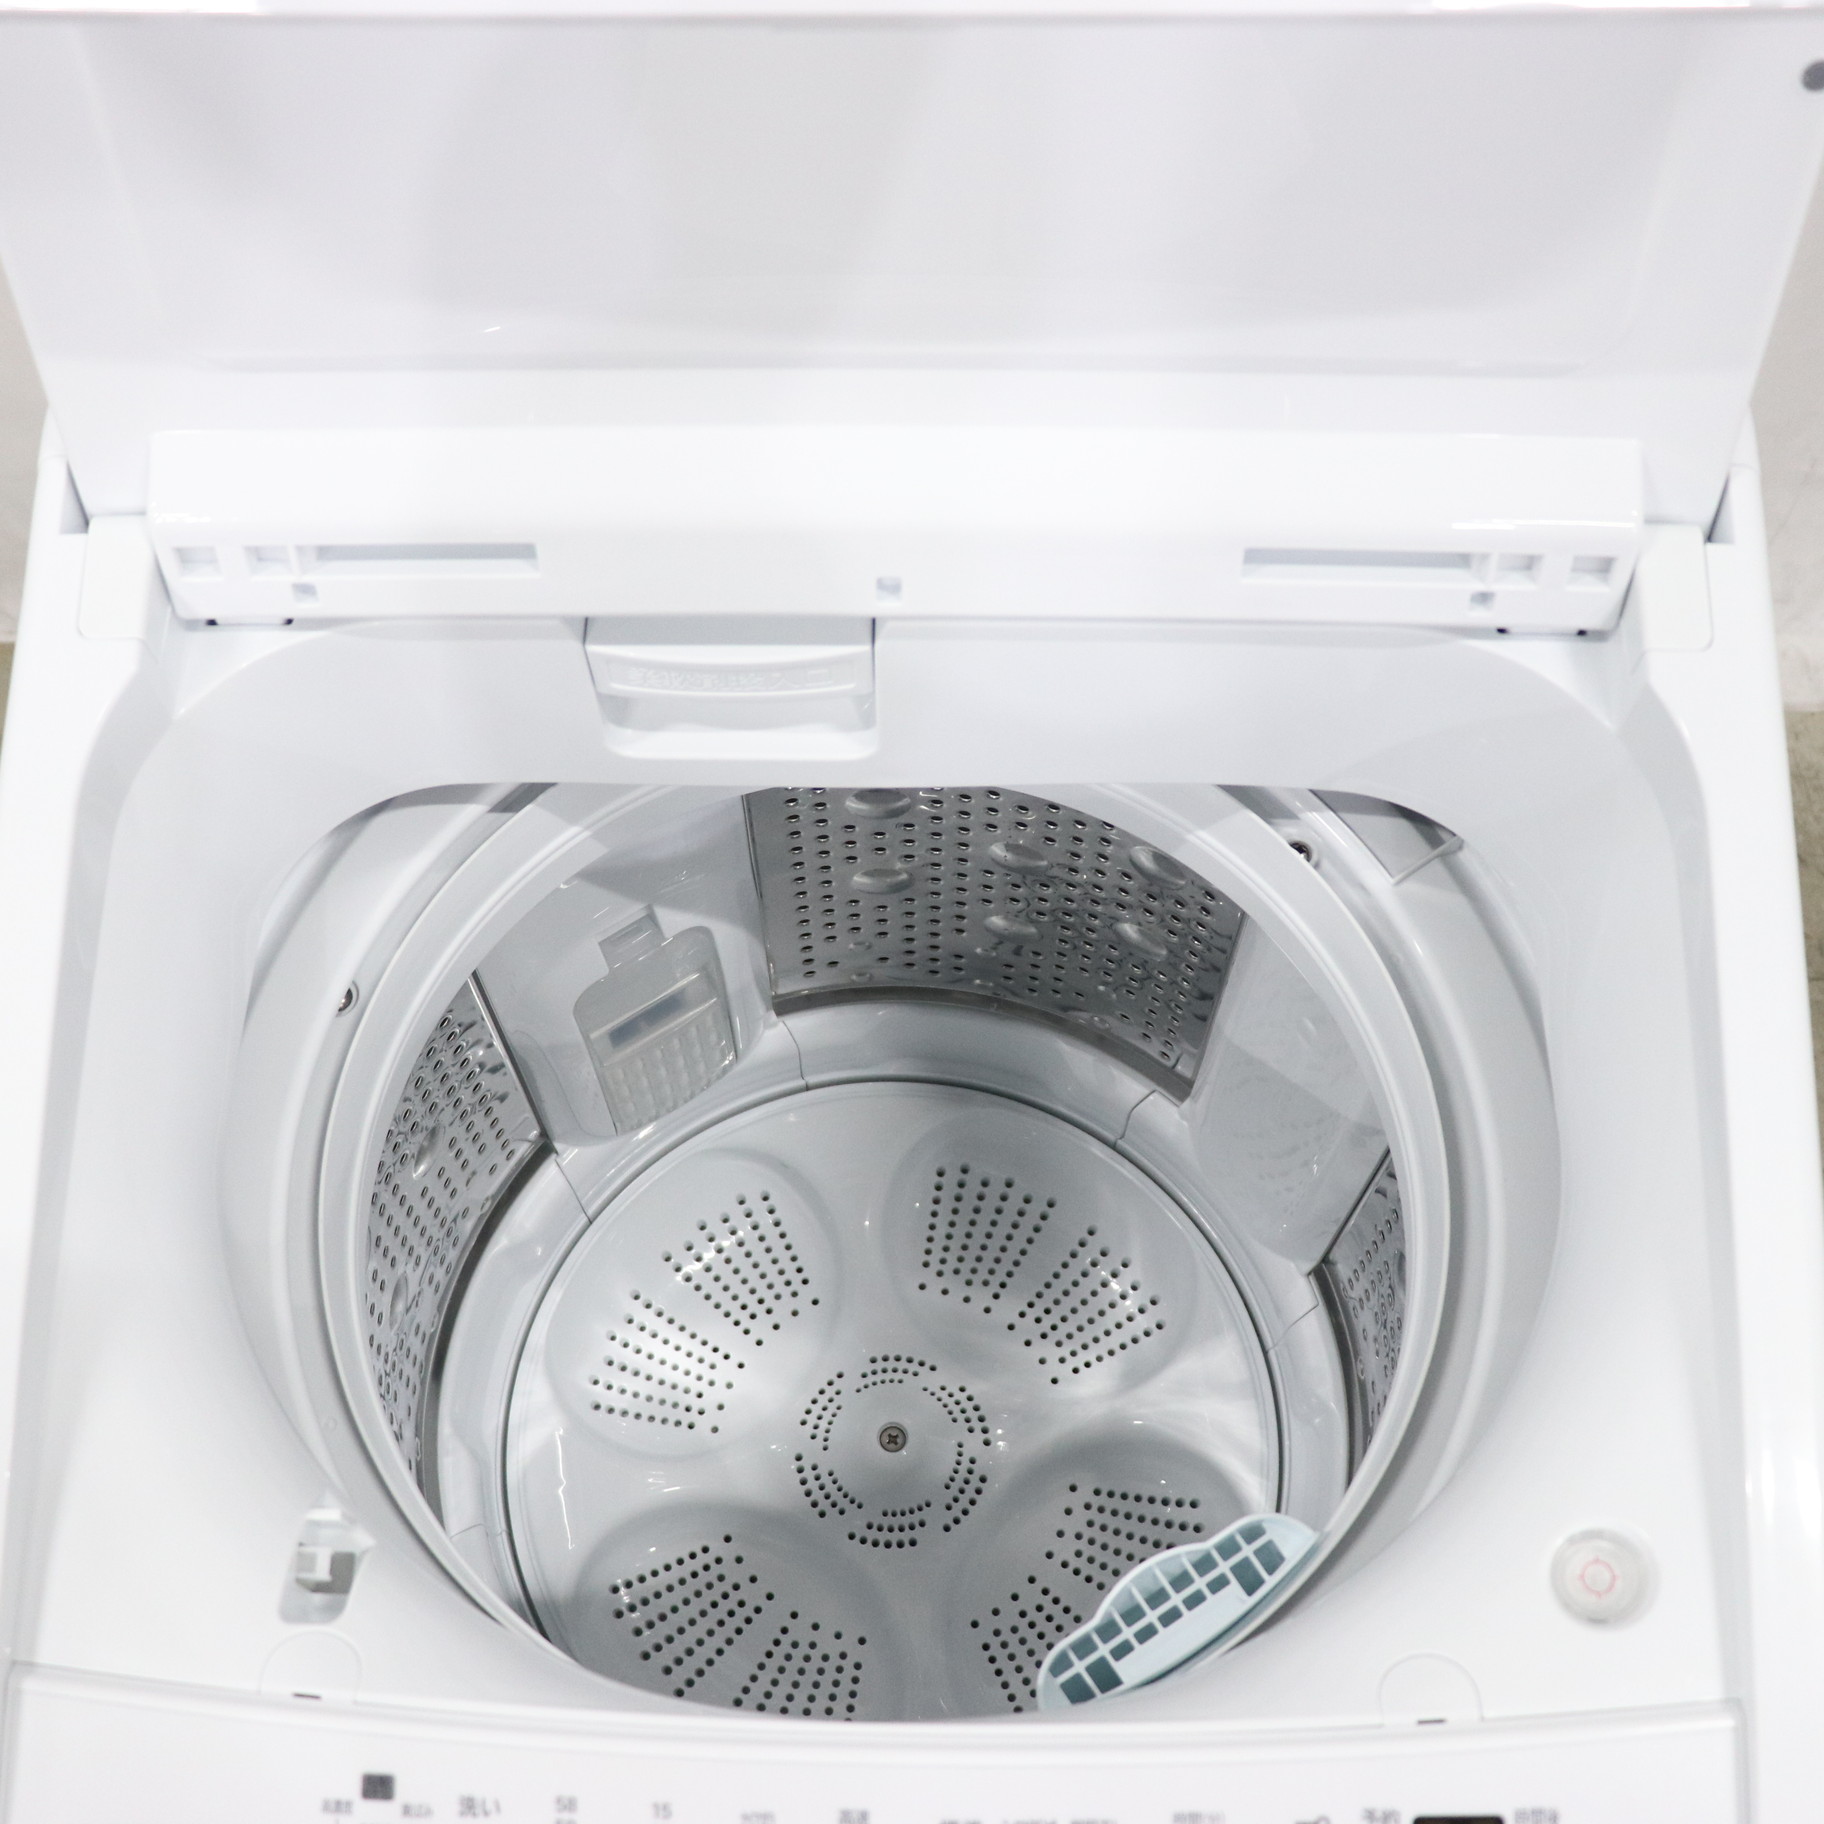 HITACHI BW-7HV 静かなインバーター洗濯機7キロ - 生活家電